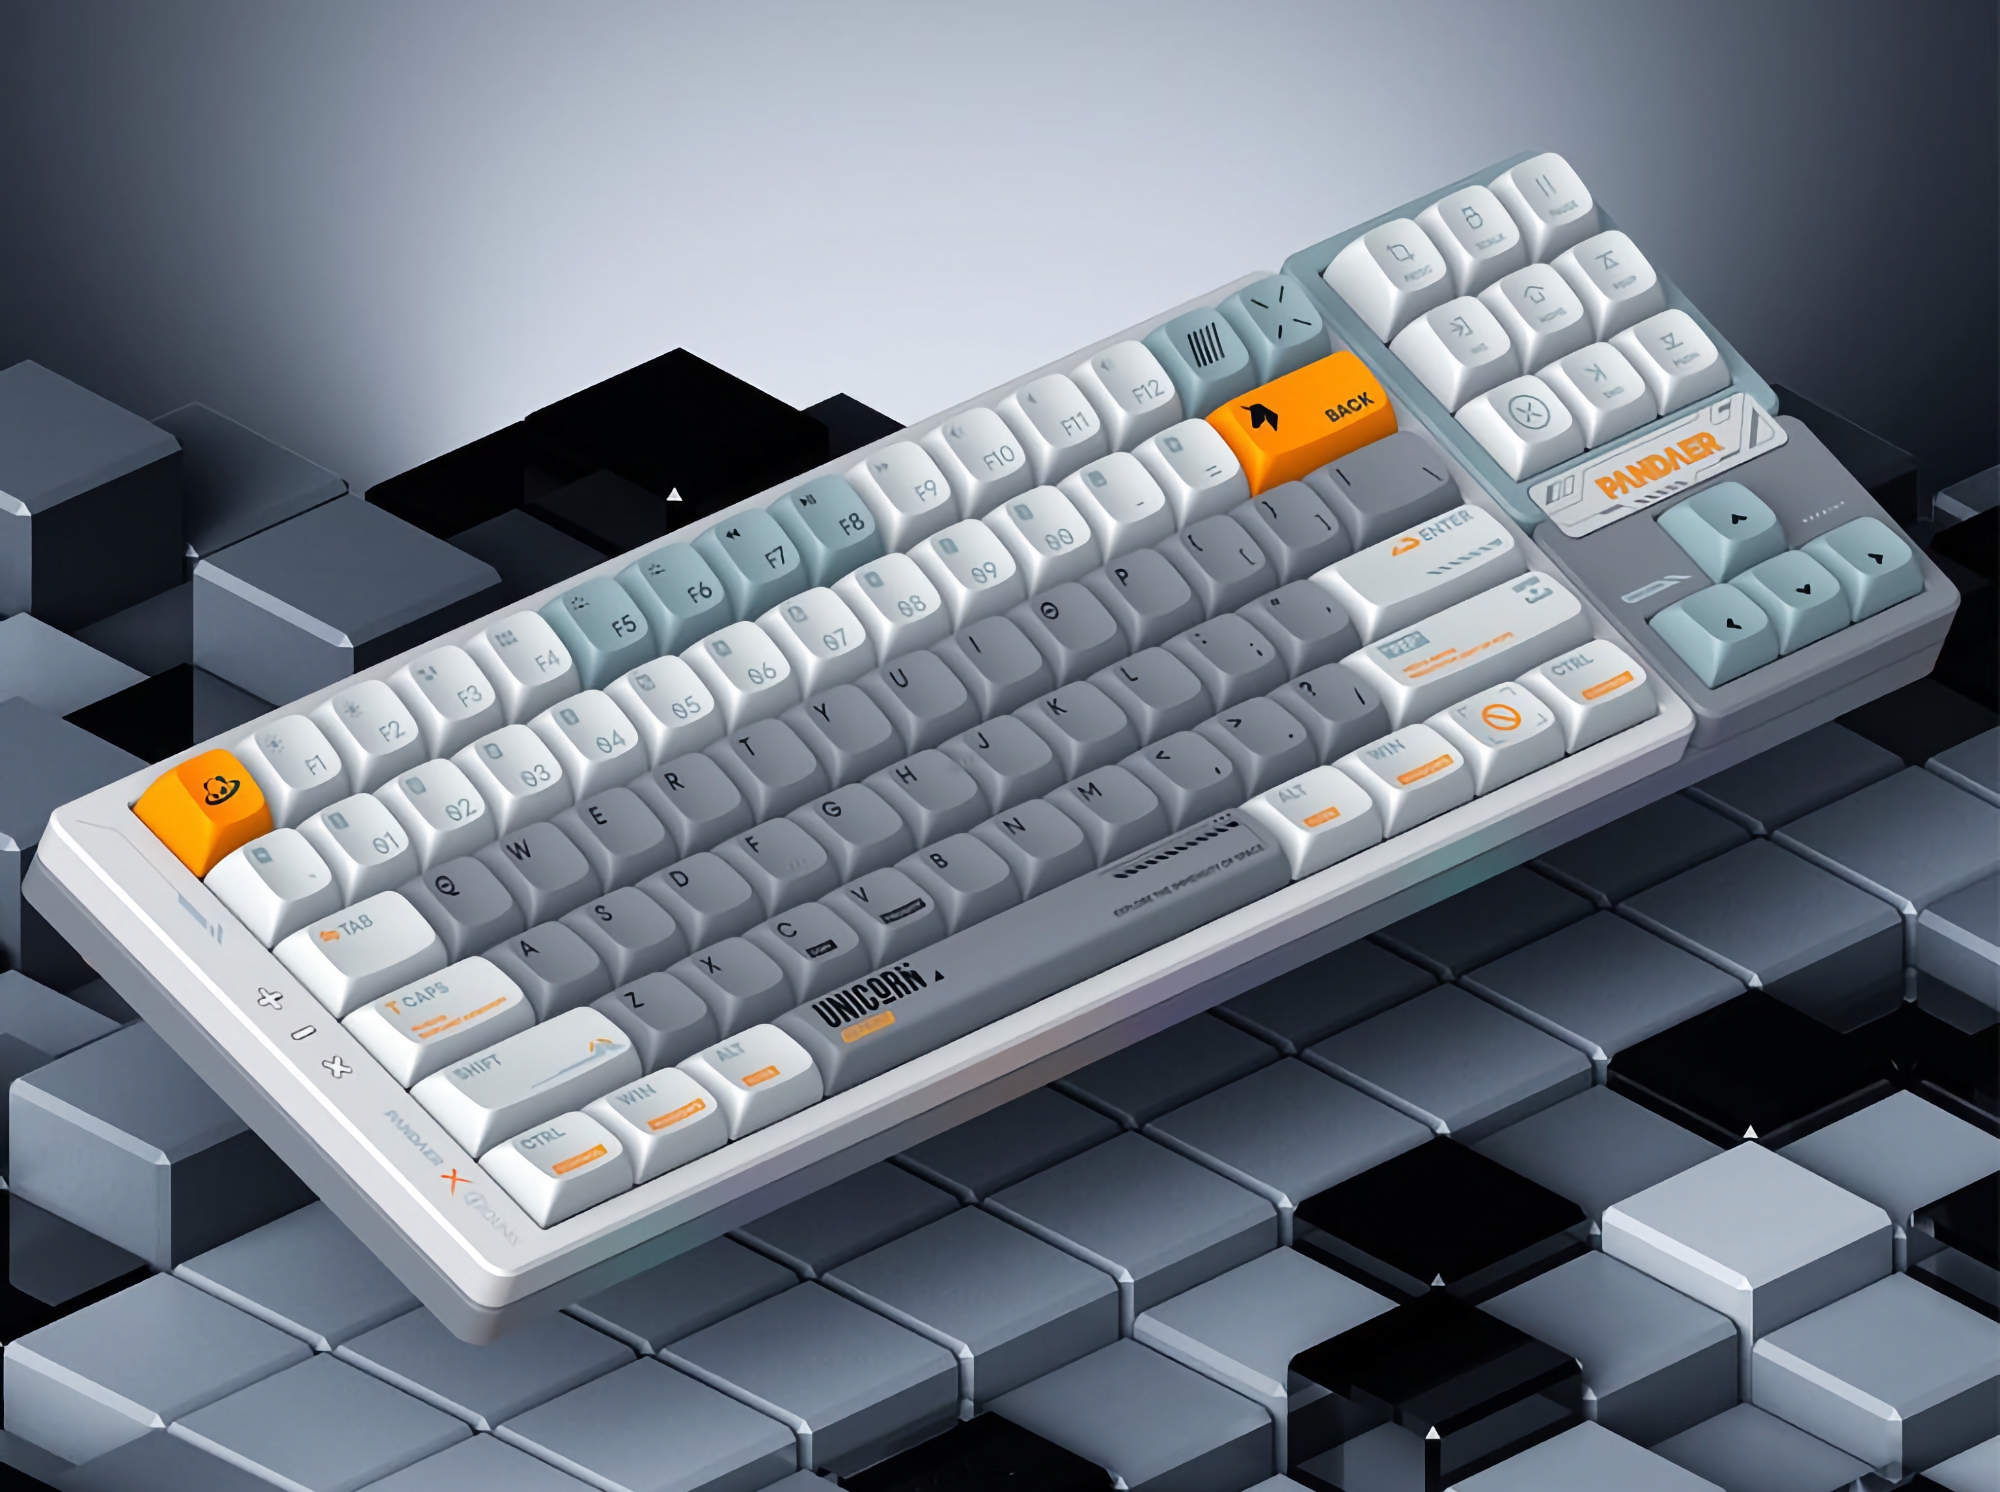 Meizu har presenterat ett nytt mekaniskt tangentbord under varumärket PANDAER med RGB-bakgrundsbelysning, avtagbara tangenter och tre anslutningslägen